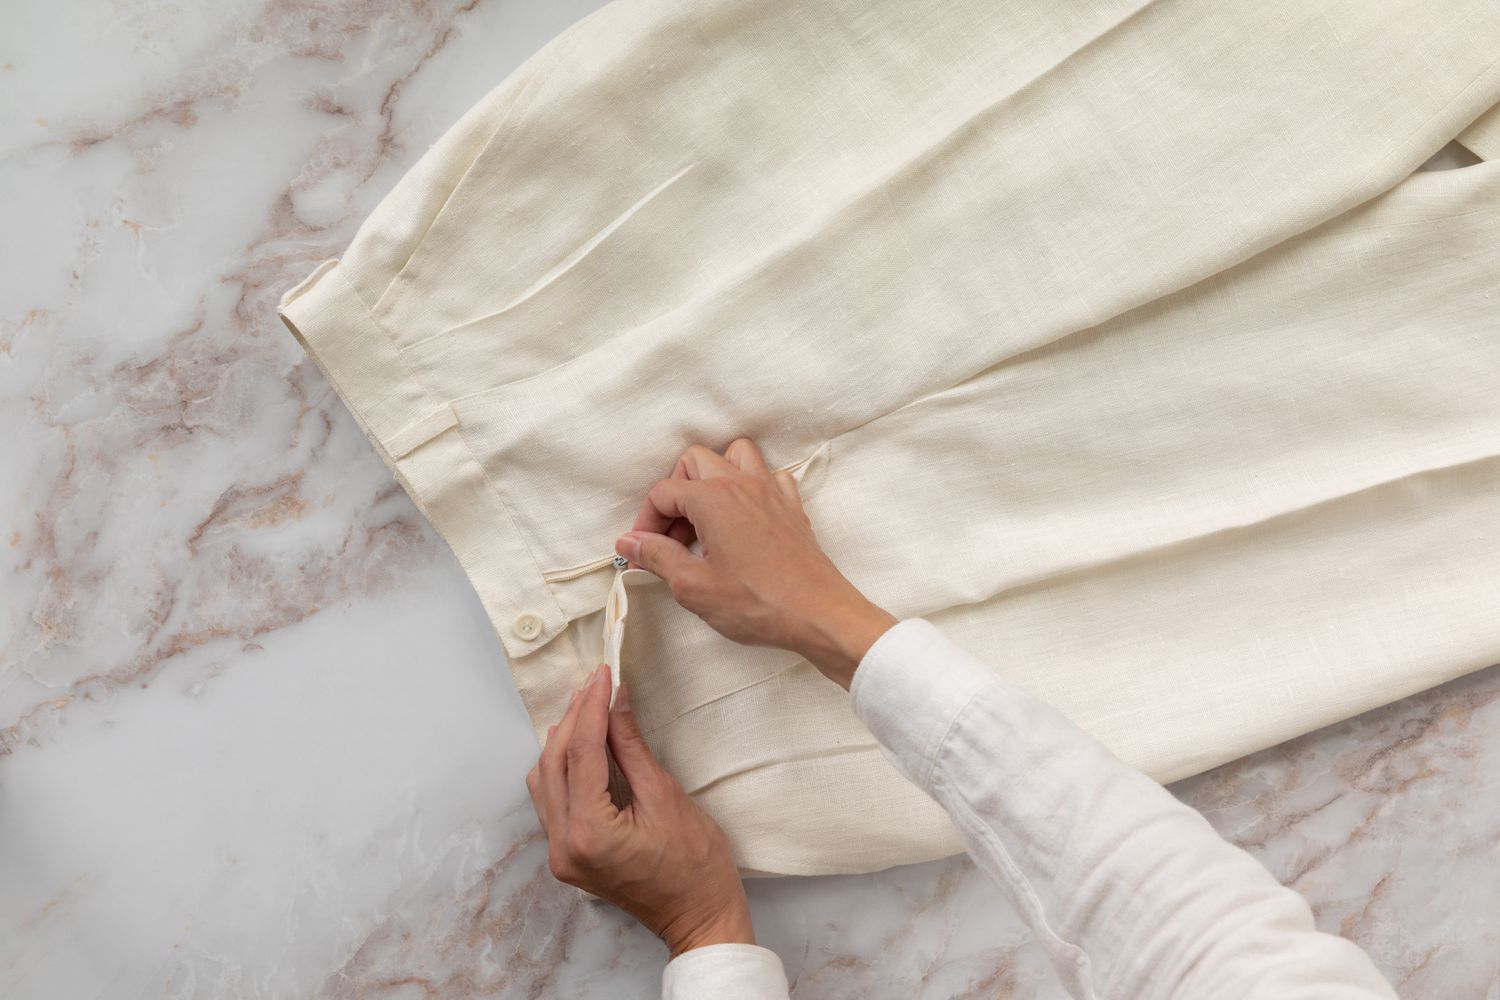 Pantalon crème à plis posé sur une surface marbrée blanche en train d'être zippé 